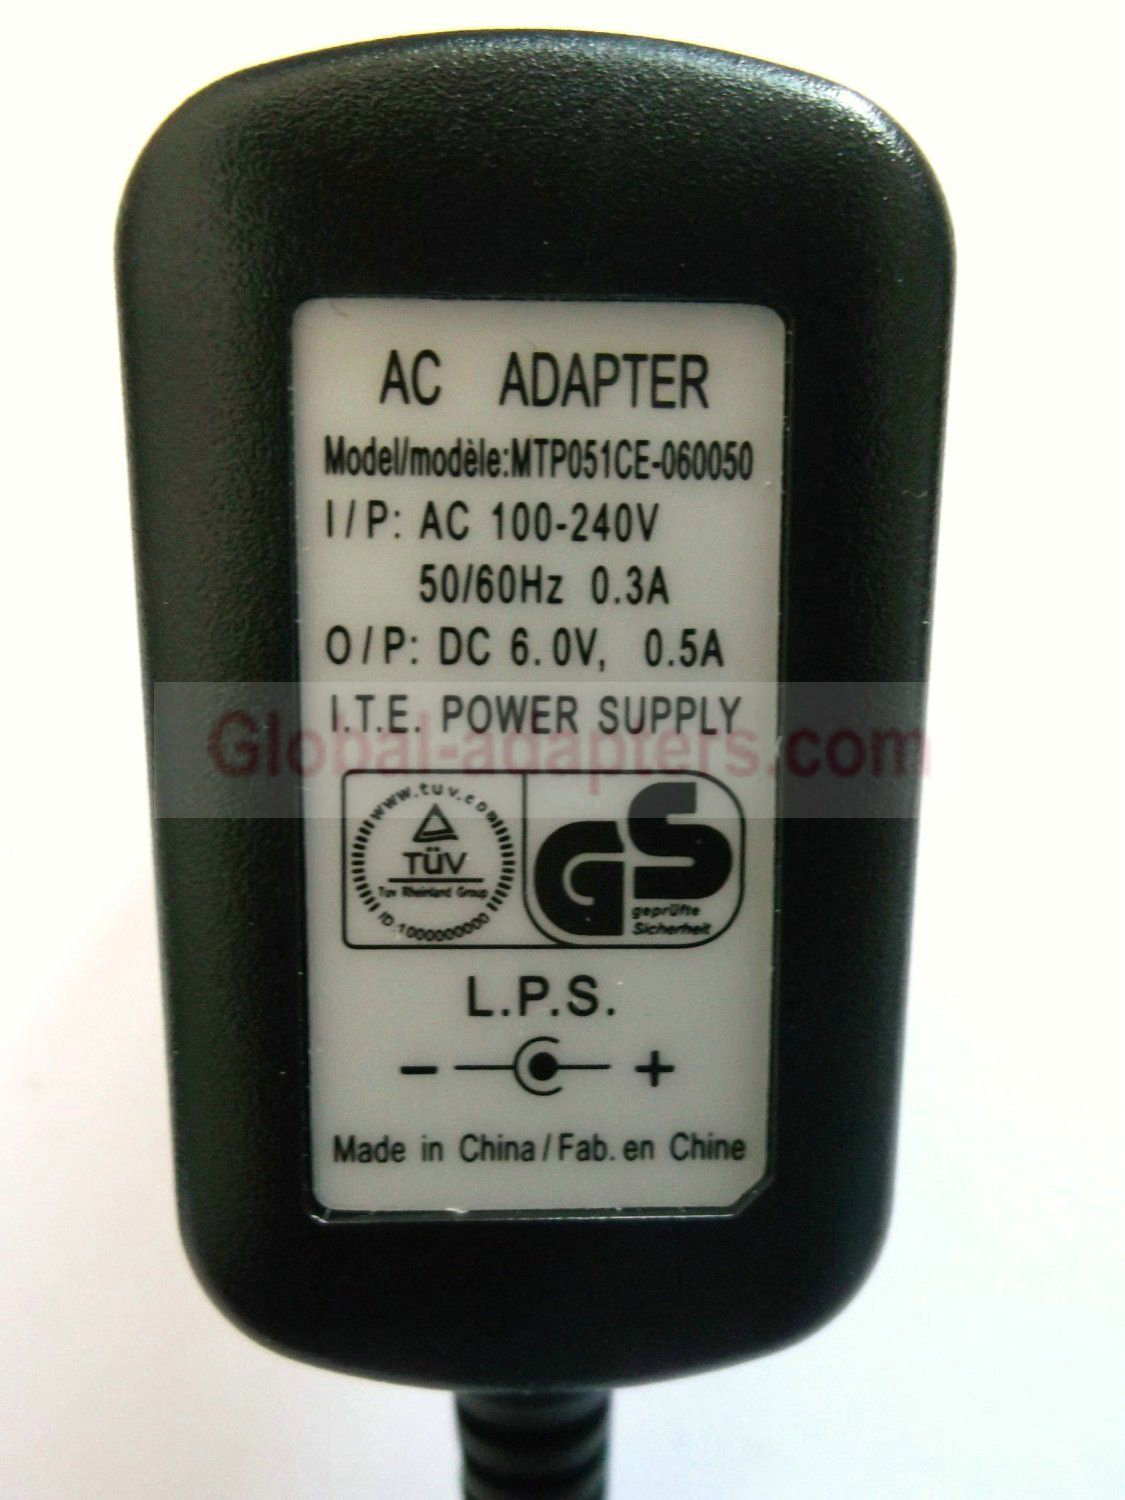 NEW 6V 0.5A MTP051CE-060050 POWER SUPPLY AC ADAPTER EU - Click Image to Close